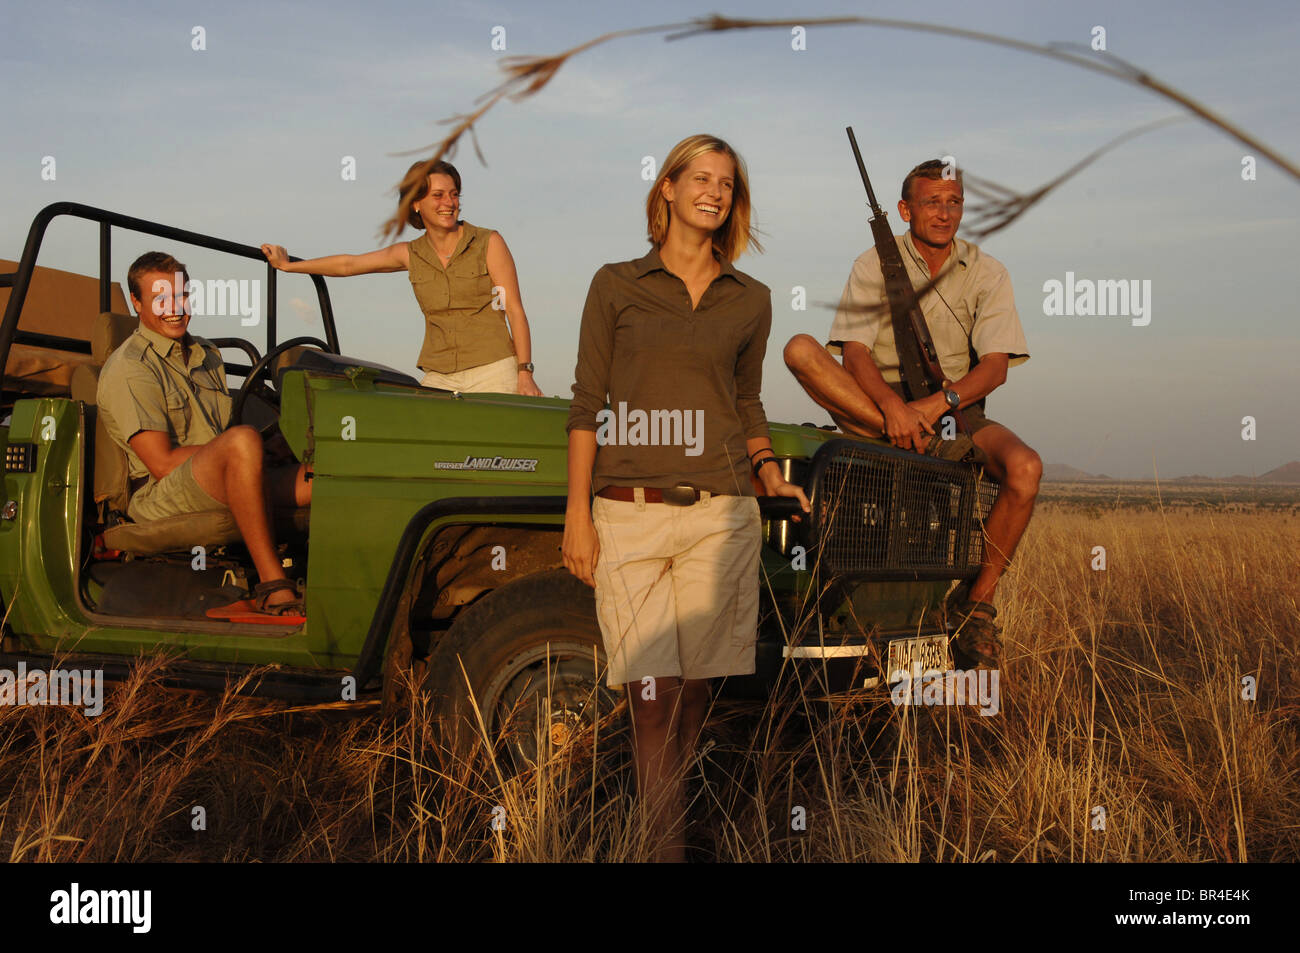 Four people smiling on safari. Stock Photo